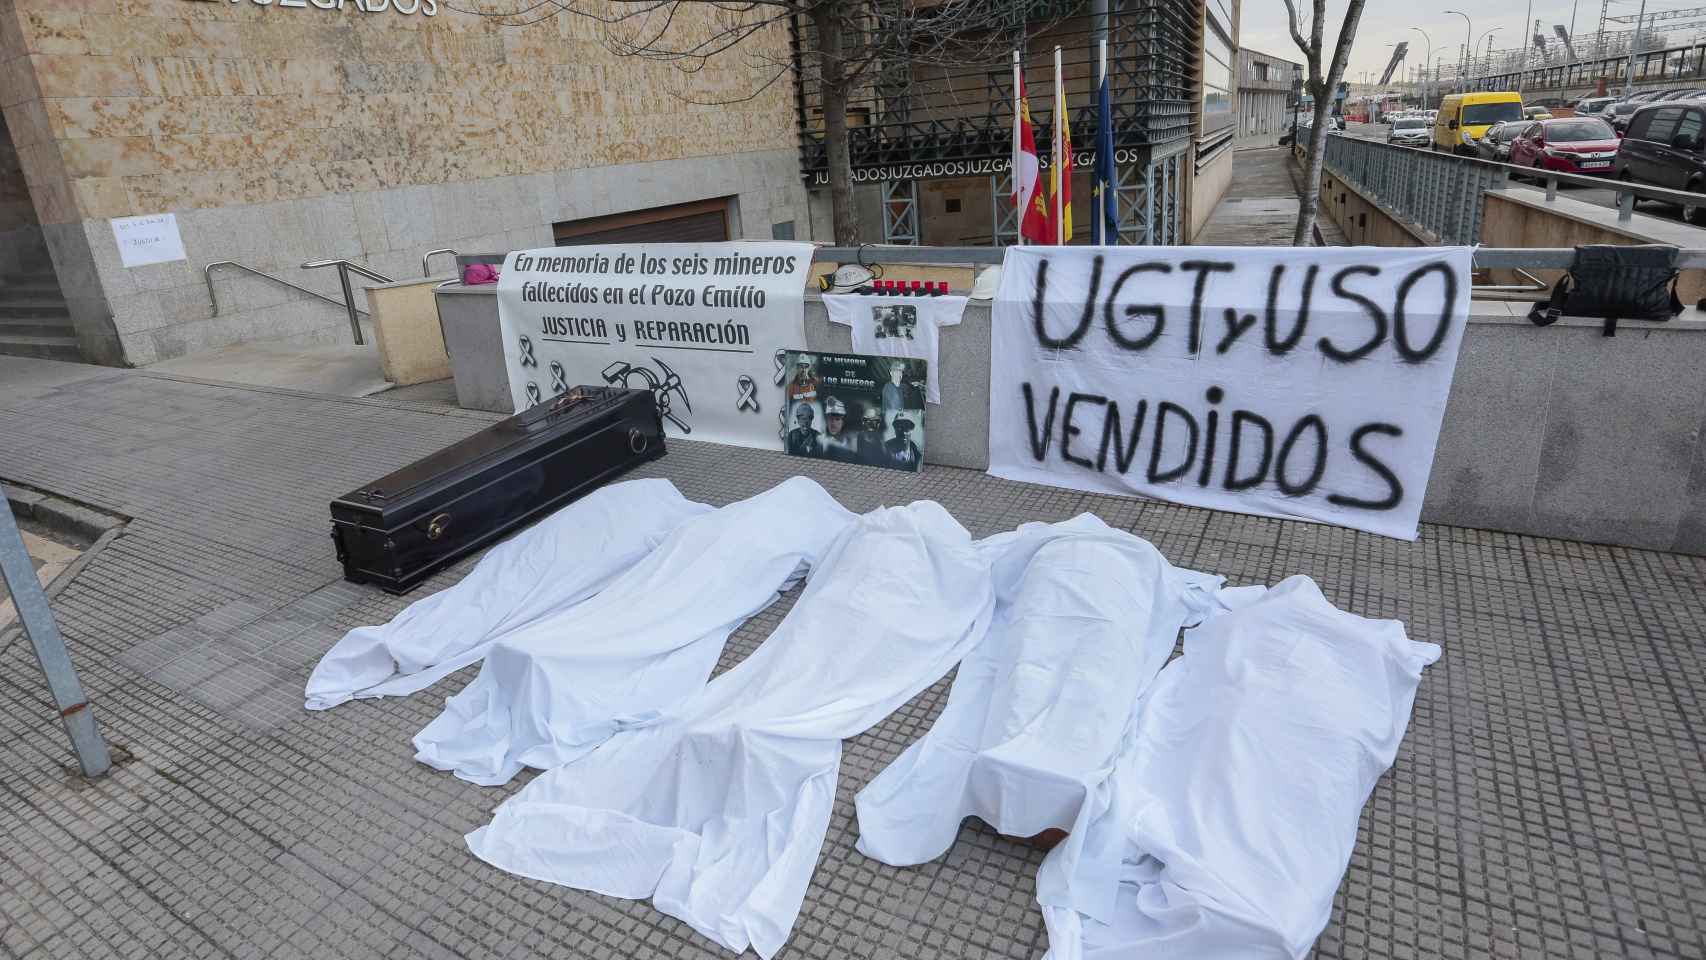 Atáud y cadáveres tapados con sábanas a las puertas del juzgado en León